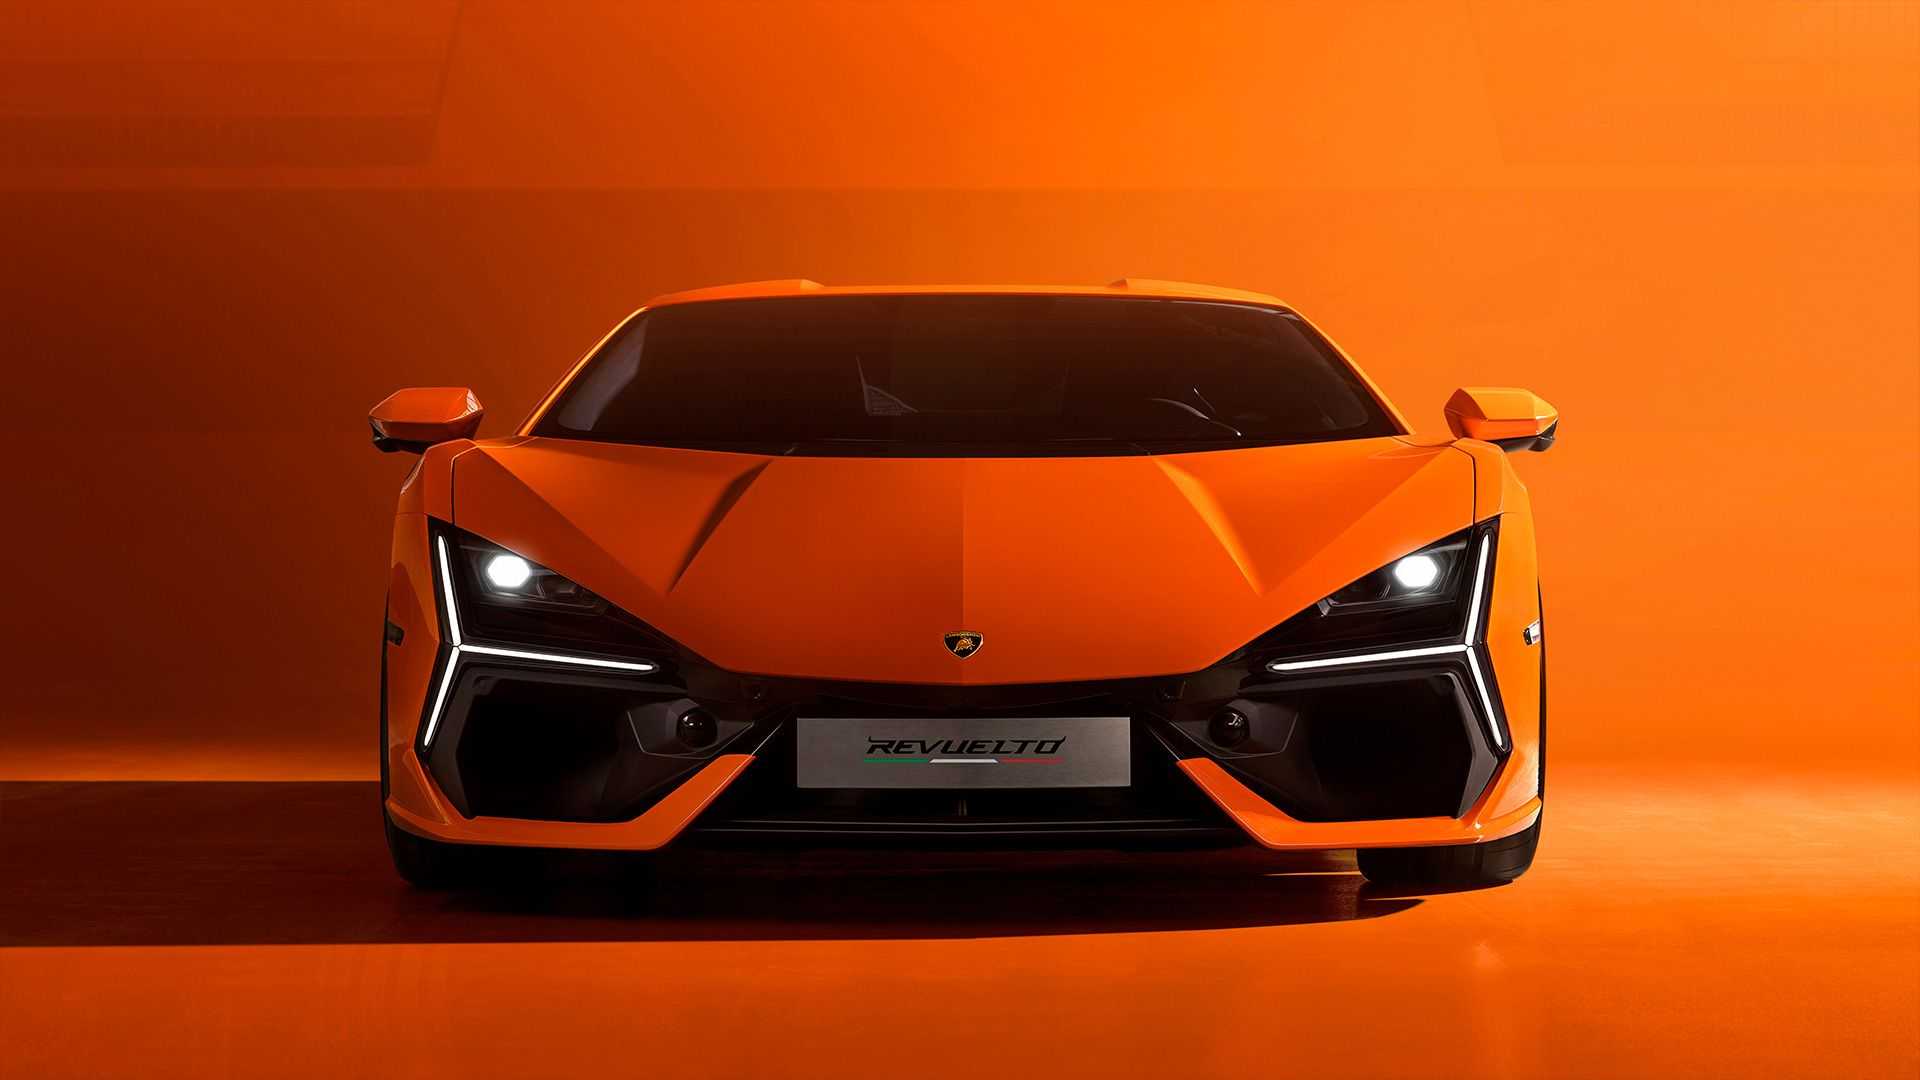 Ra mắt Lamborghini Revuelto thế chỗ Aventador: Siêu xe mạnh nhất lịch sử hãng nhưng đi phố chỉ ngang cơ Civic - ảnh 7